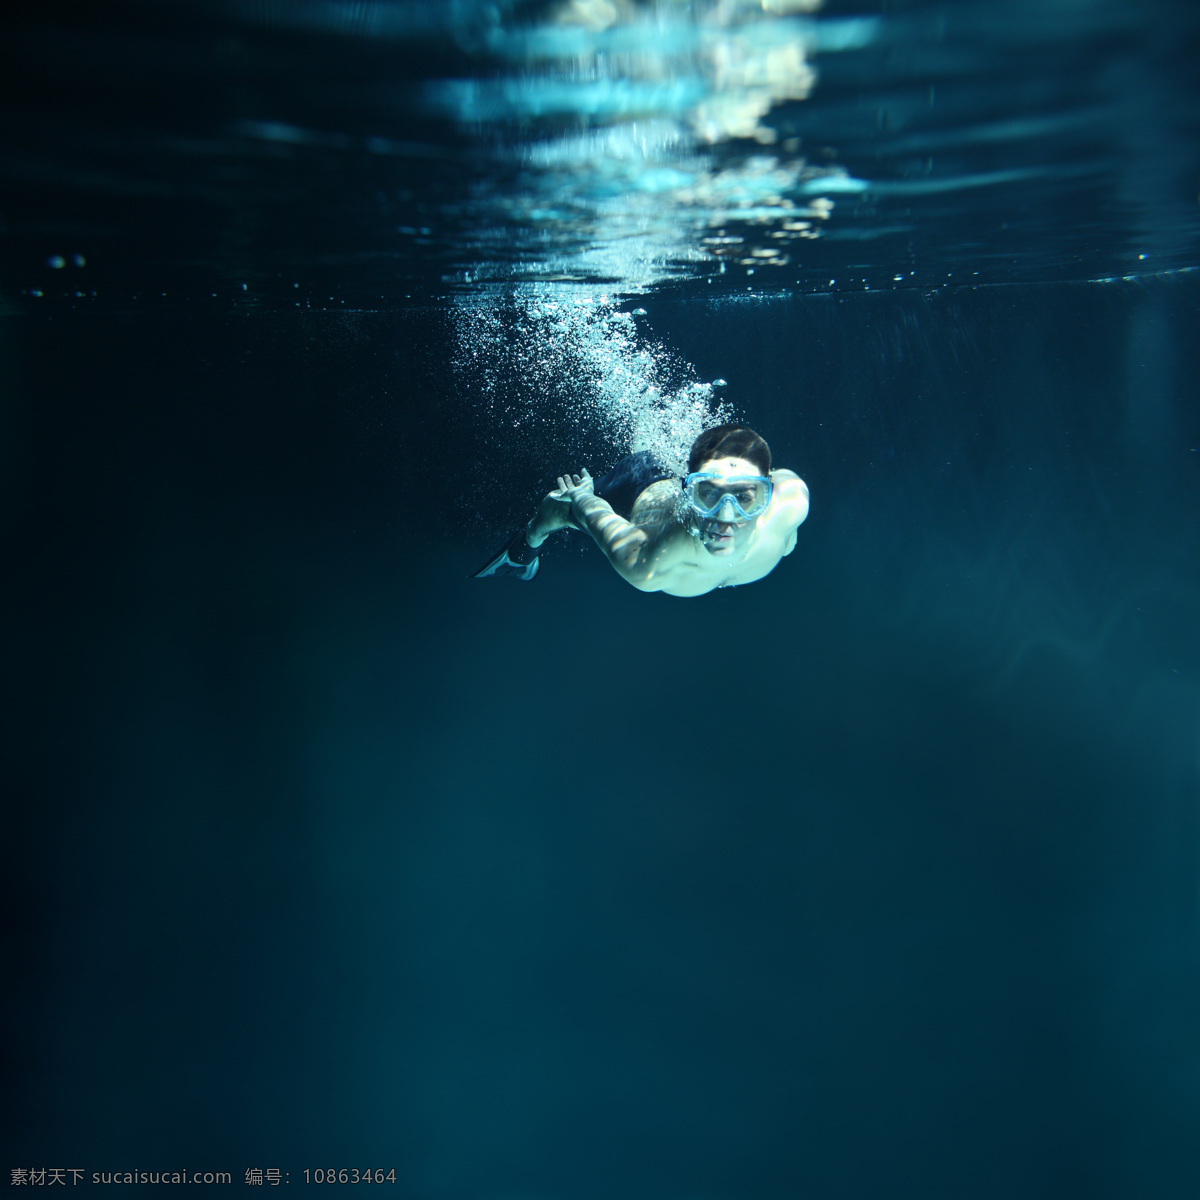 水中 游泳 运动员 潜水运动员 男子 体育运动员 体育运动 体育运动项目 生活百科